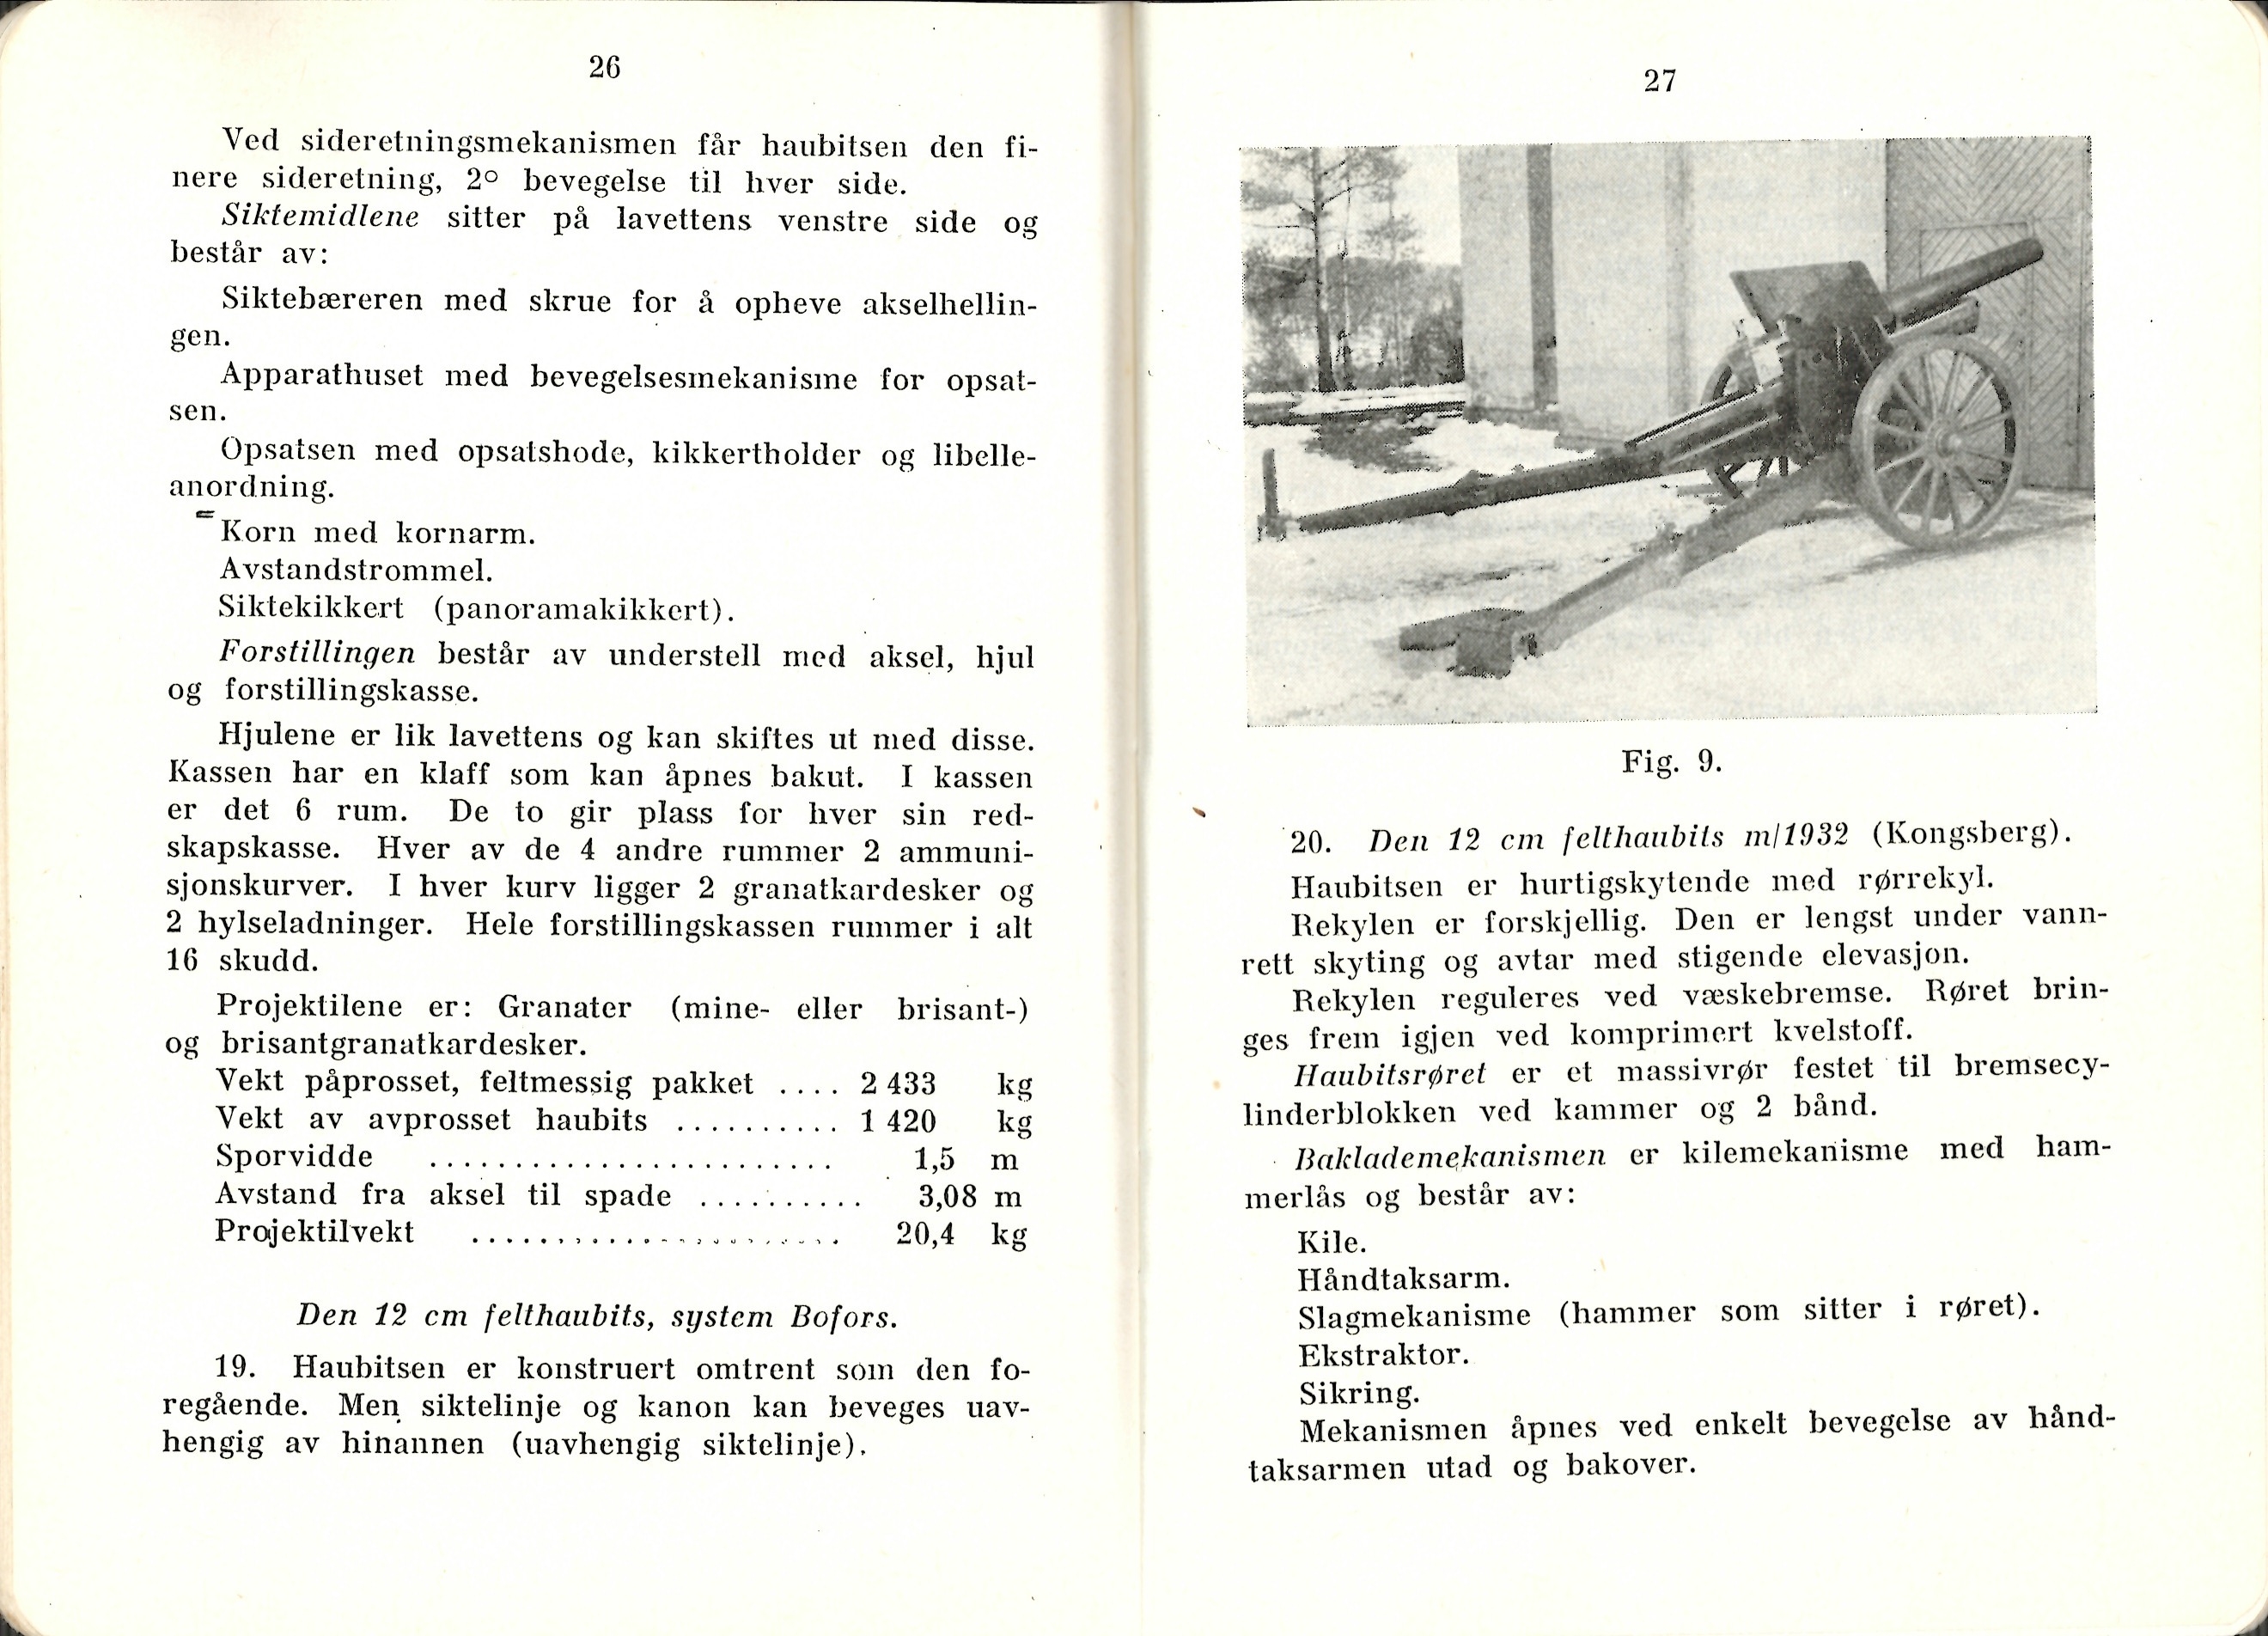 ./doc/reglement/K1/K1-Handbok-Felt-og-bergartilleristen-1938-15.jpg